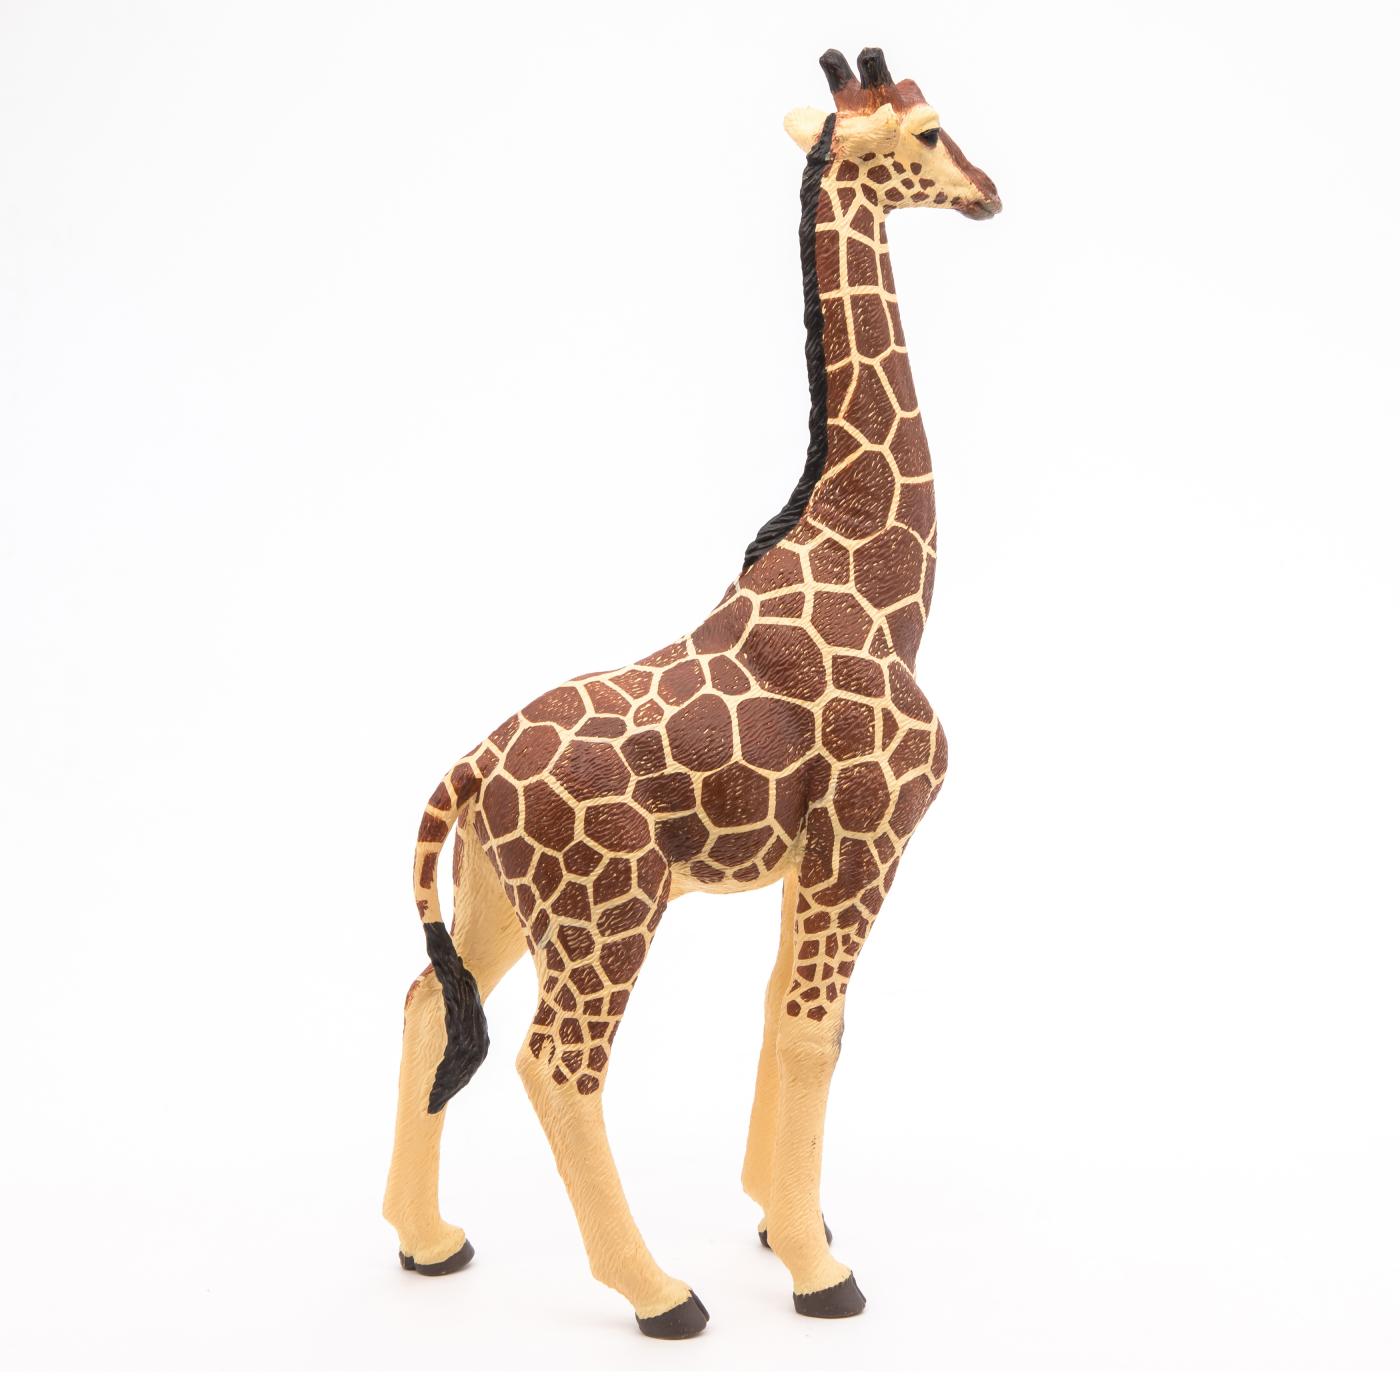 Papo Figur Giraffe männlich Tierfigur Sammelfigur Spielzeug Kinder 50149 